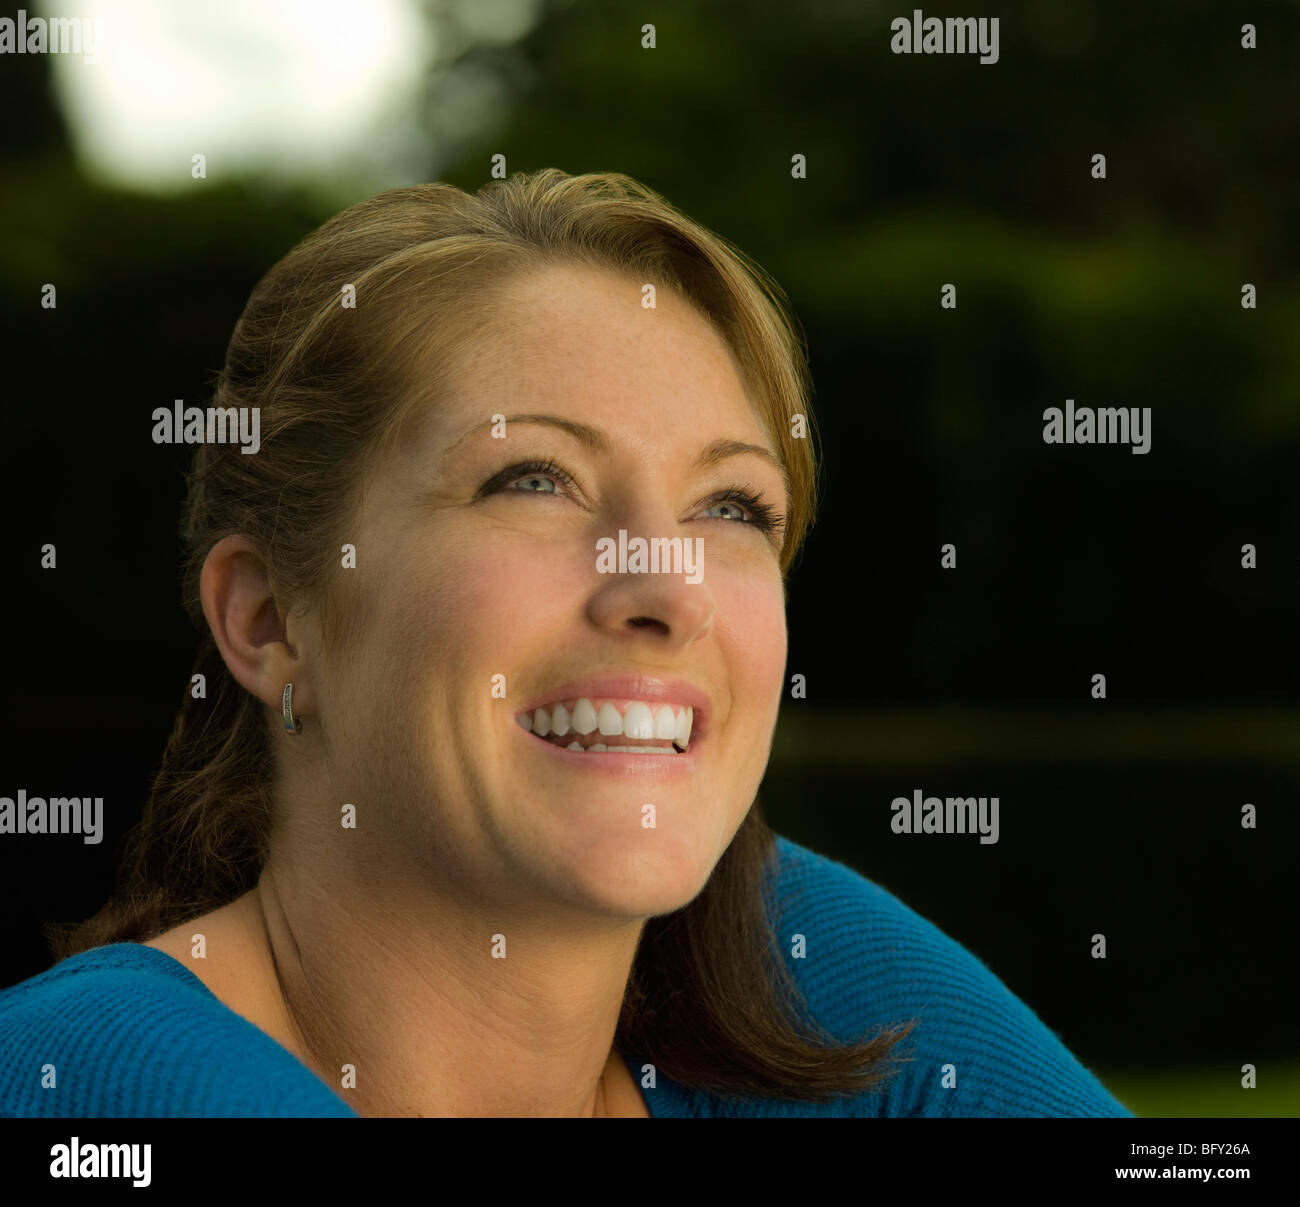 Ritratto di una donna sorridente al di fuori della fotocamera Foto Stock